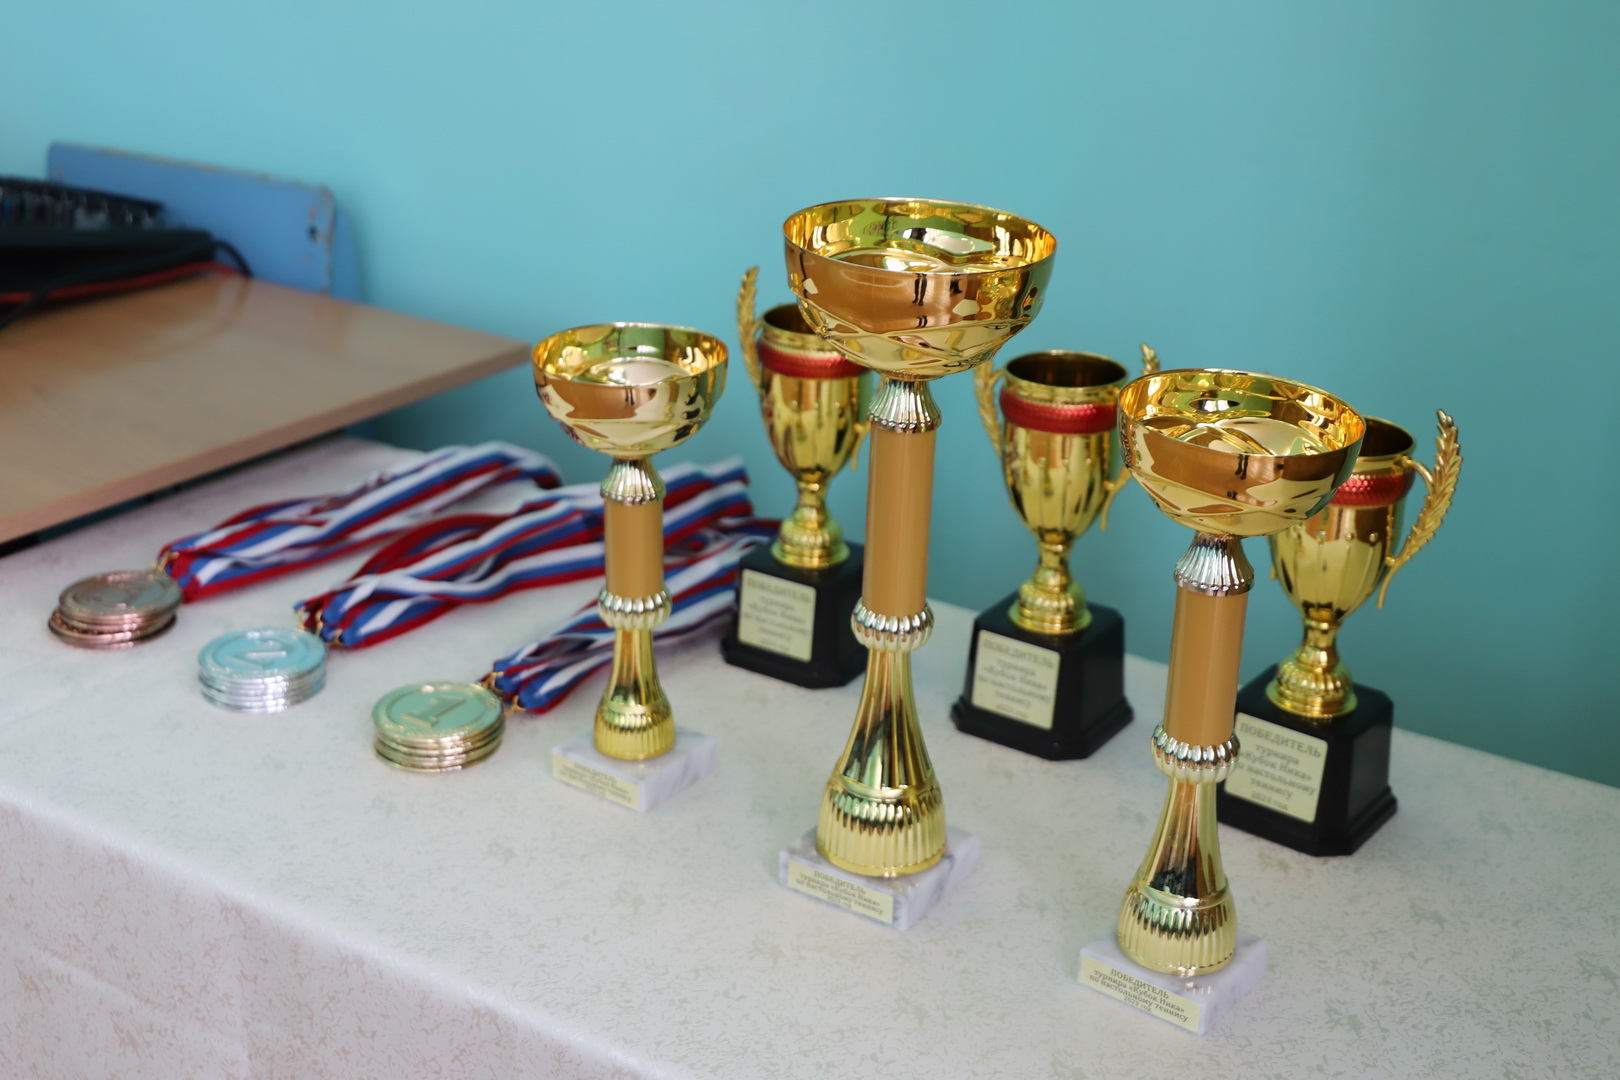 В Никольской школе прошёл областной турнир по настольному теннису «Кубок Ника».